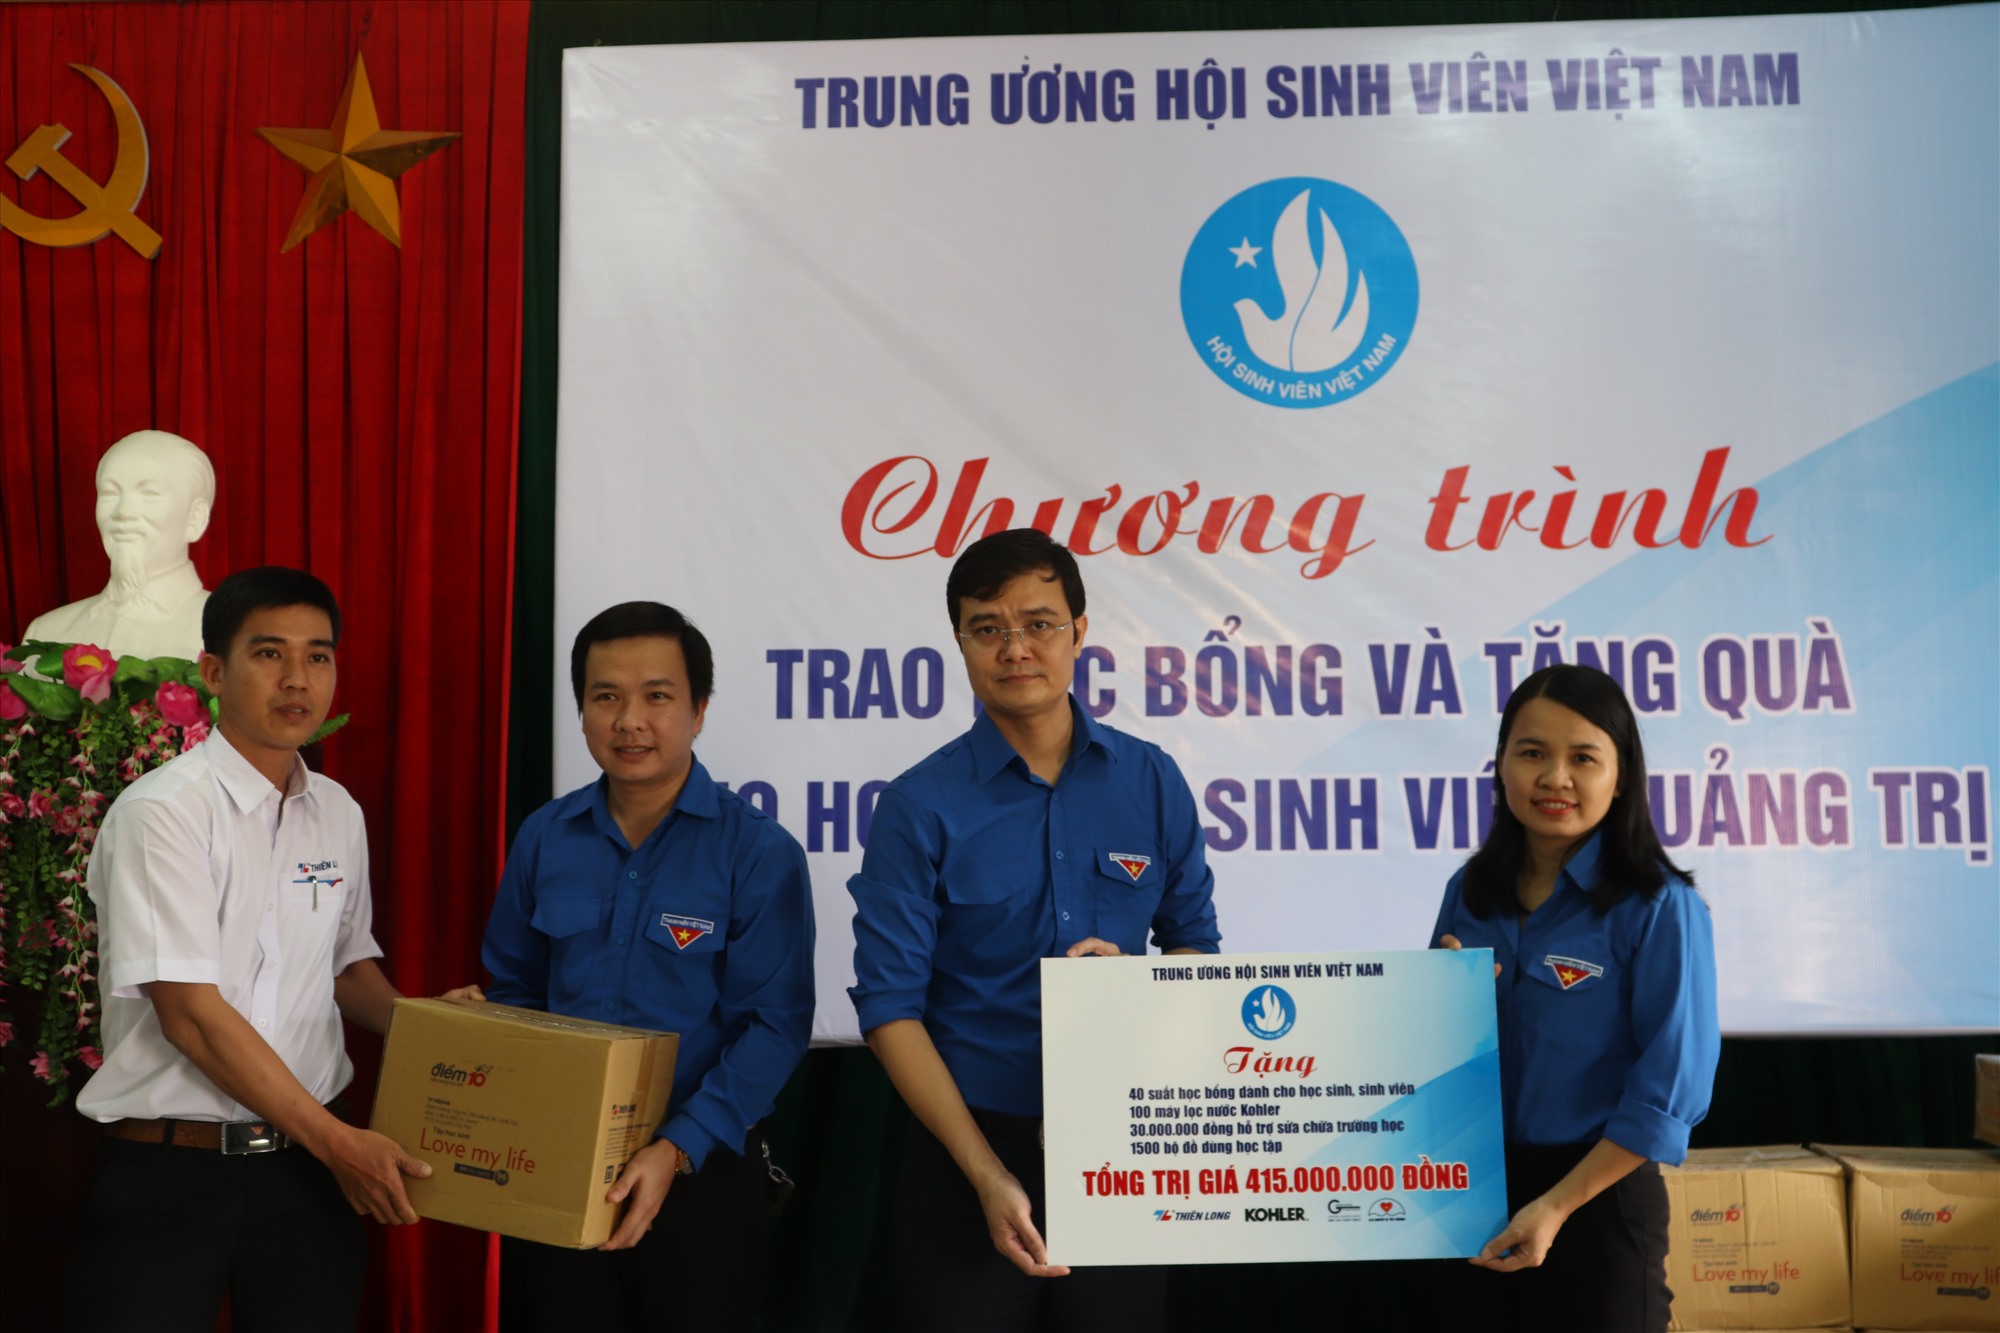 Tỉnh Đoàn Quảng Trị tiếp nhận các phần quà của Trung ương Hội Sinh viên Việt Nam - Ảnh: T.P